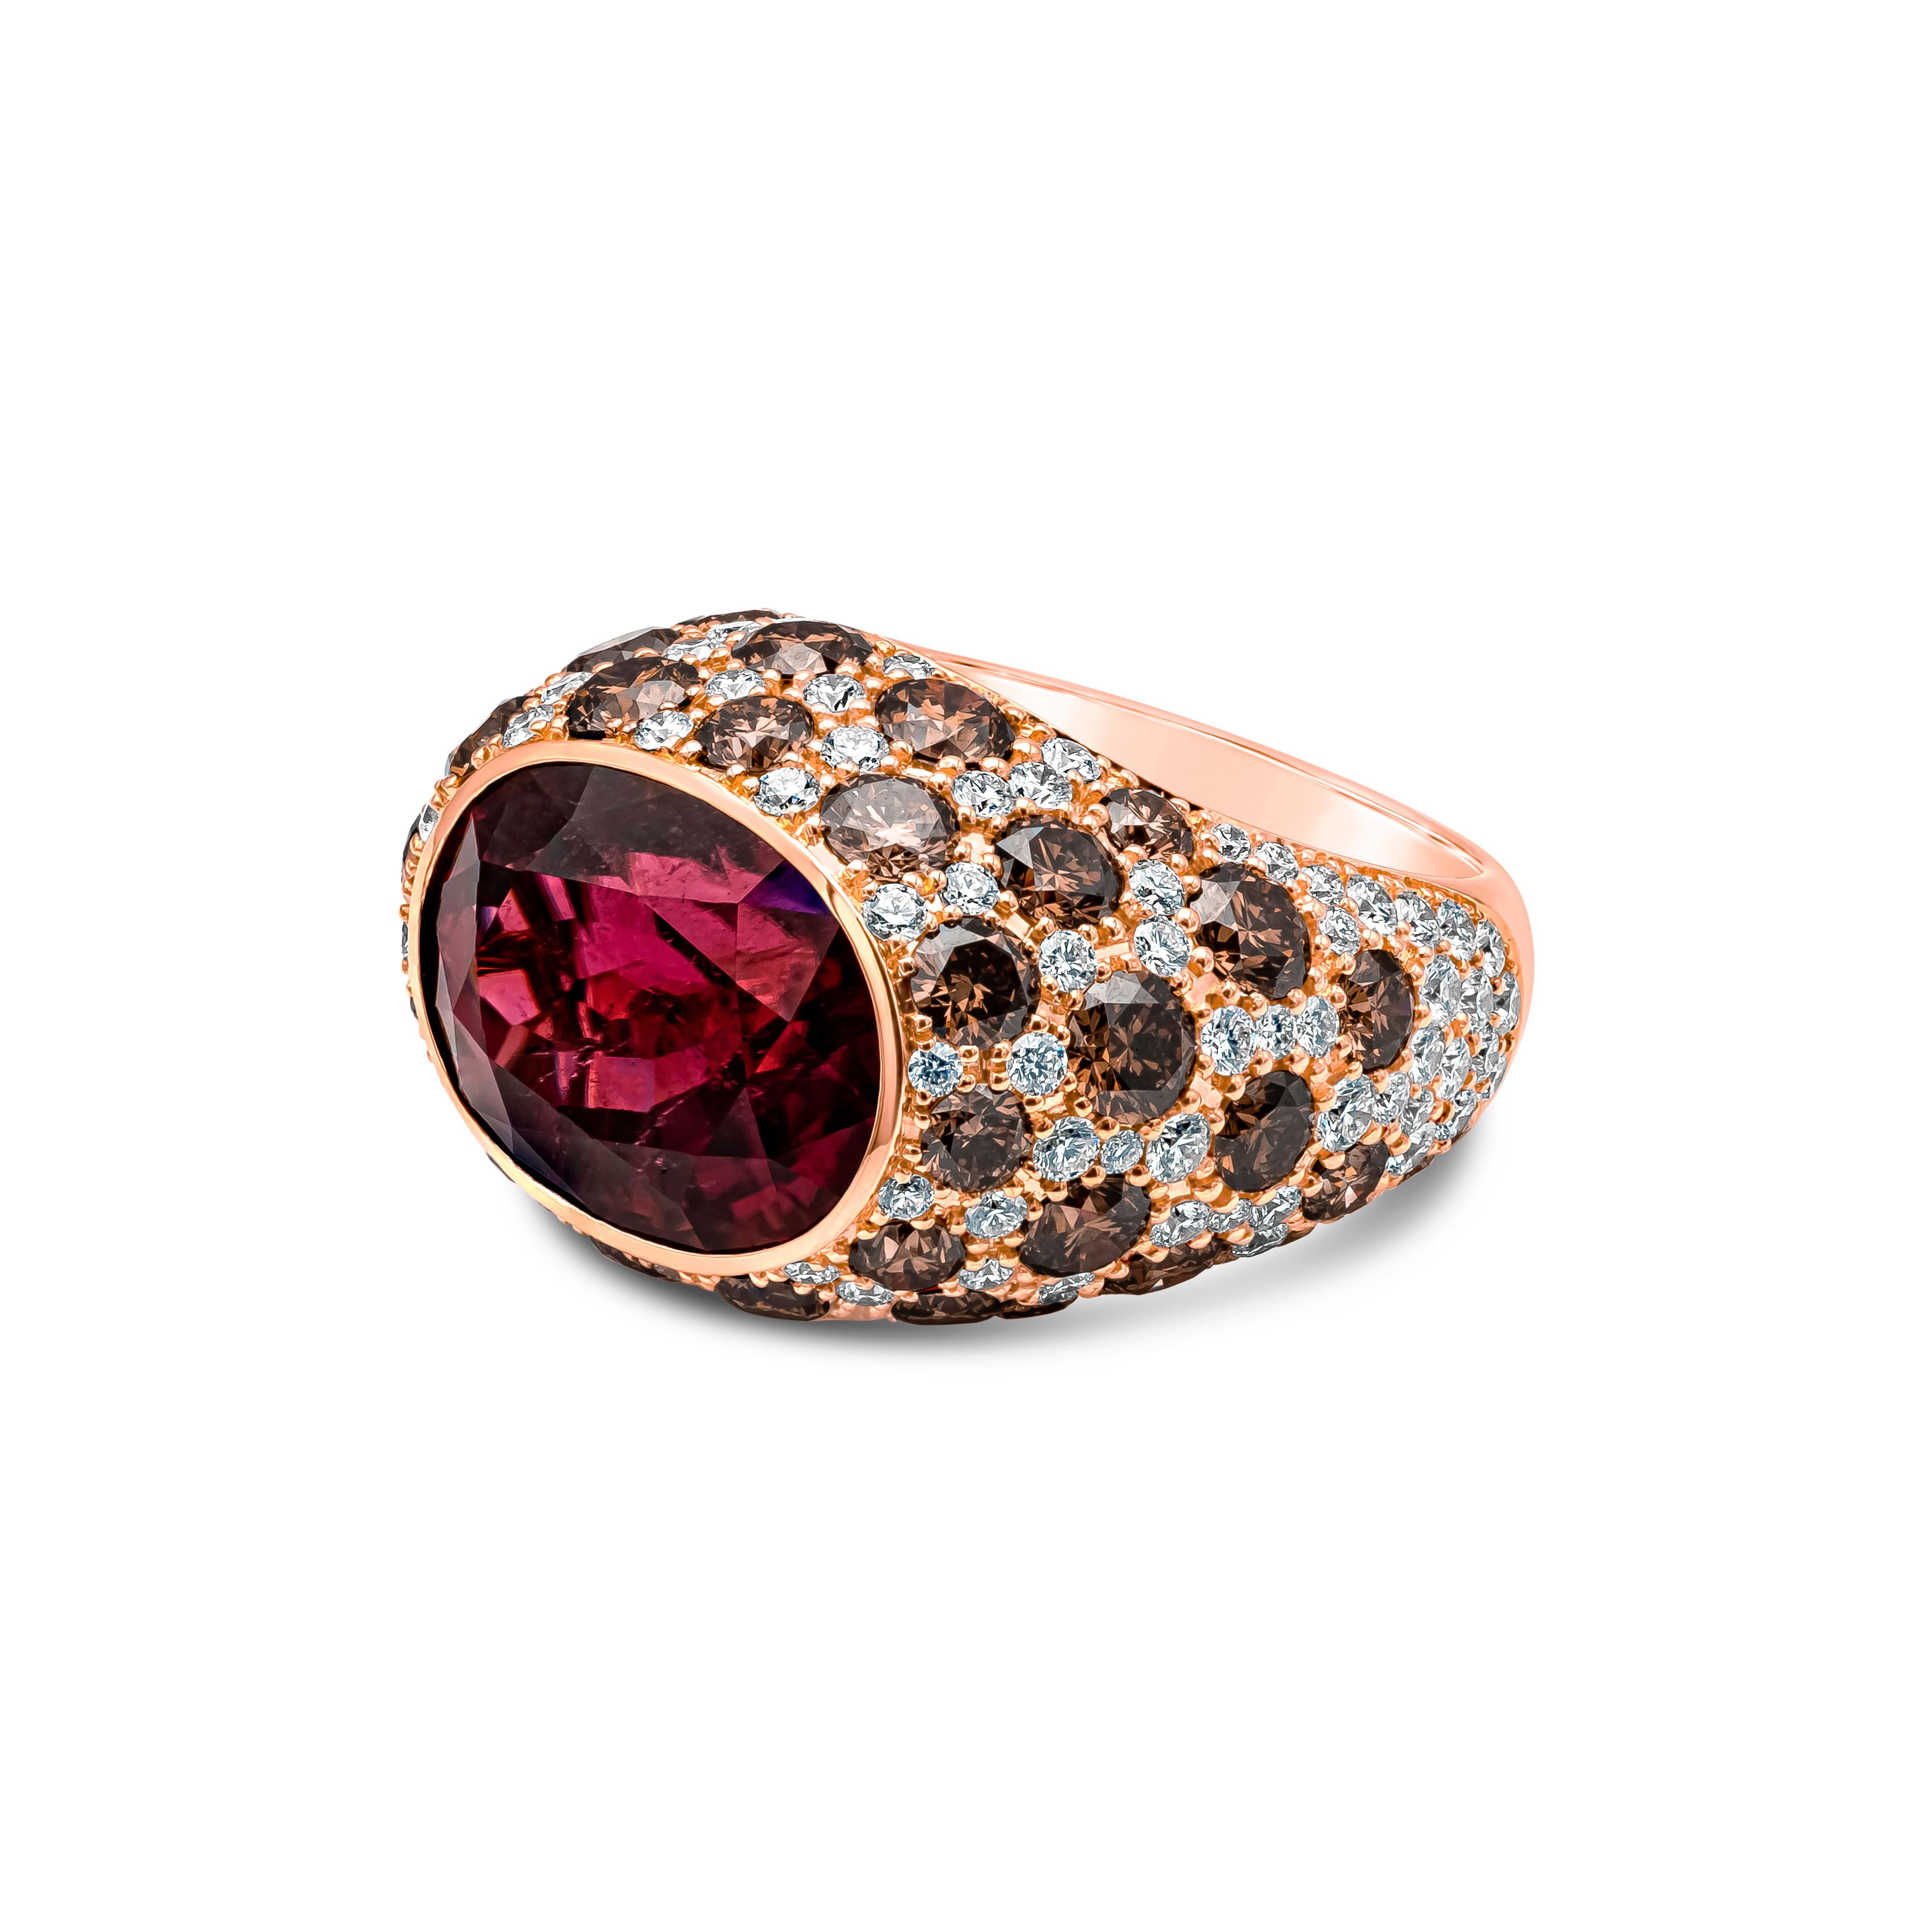 Eine faszinierende und Gespräch Stück Mode Ring präsentiert einen ovalen Schliff Rubellit Turmalin mit einem Gewicht von 11,79 Karat, Lünette gesetzt. Akzentuiert mit runden, gepflasterten braunen und weißen Diamanten, braunen Diamanten wiegt 5,62